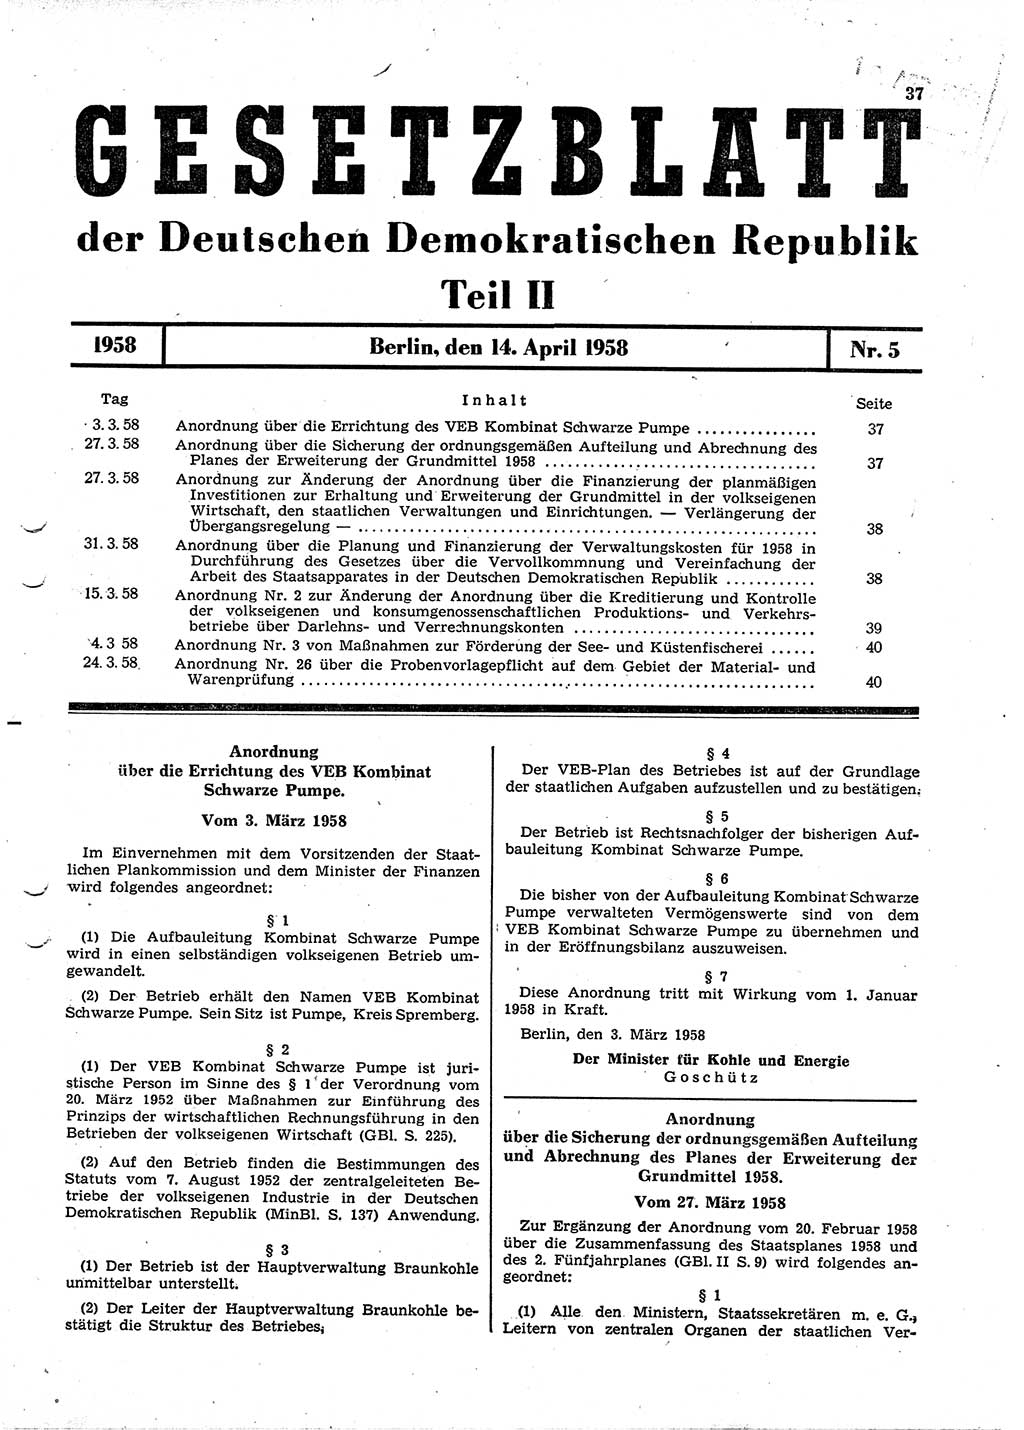 Gesetzblatt (GBl.) der Deutschen Demokratischen Republik (DDR) Teil ⅠⅠ 1958, Seite 37 (GBl. DDR ⅠⅠ 1958, S. 37)